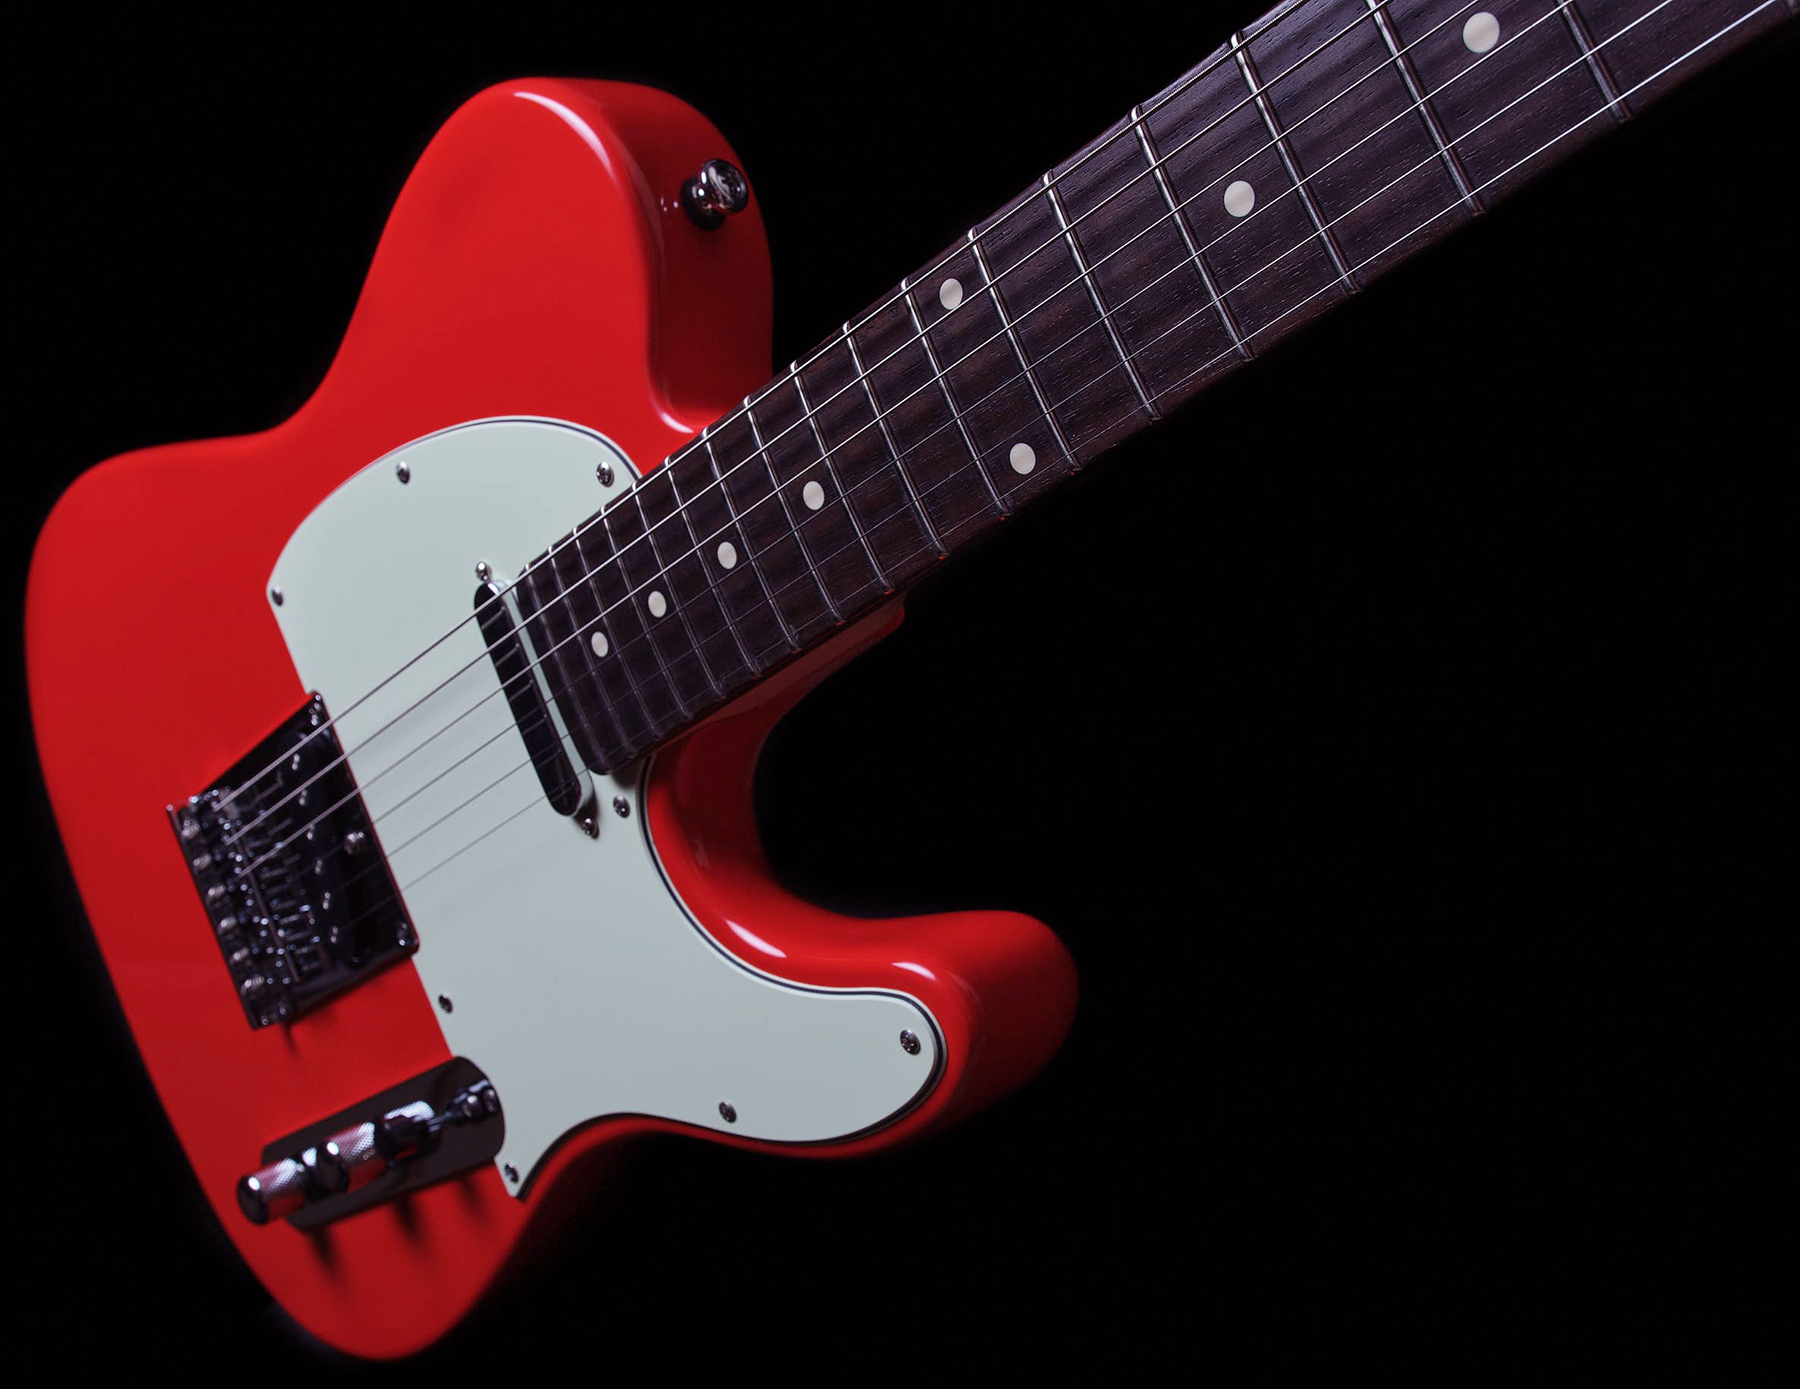 Sire Larry Carlton T3 Lh Signature Gaucher 2s Ht Rw - Dakota Red - Linkshandige elektrische gitaar - Variation 2